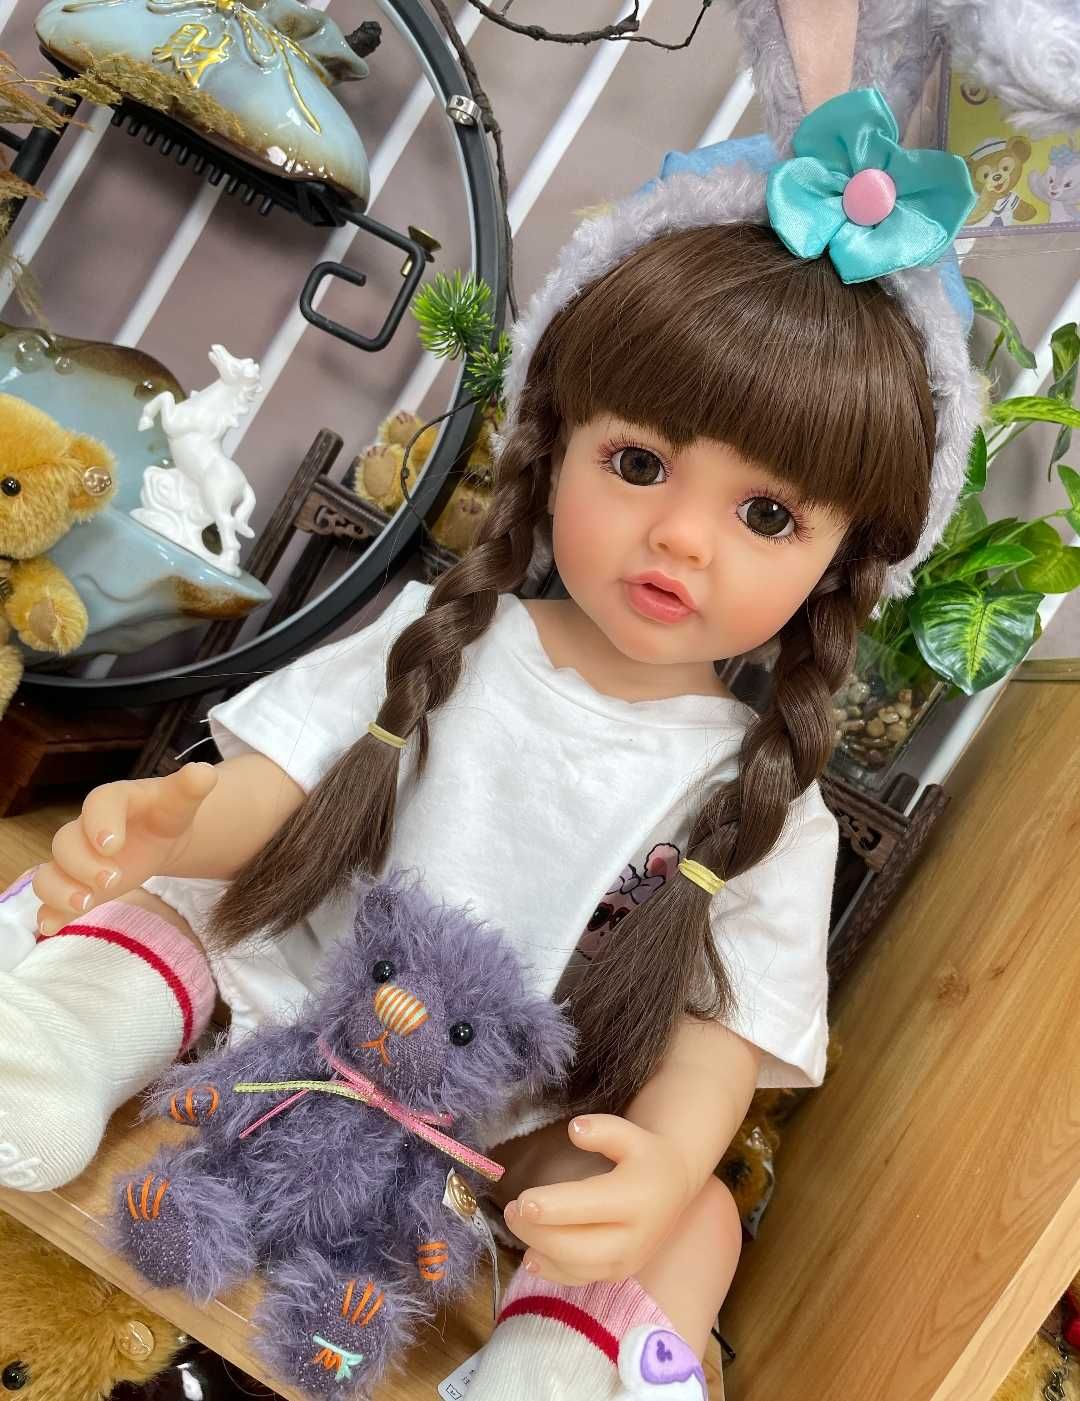 2) Кукла- младенец BZDOLL Реалистичная мягкая Кукла Реборн 55см